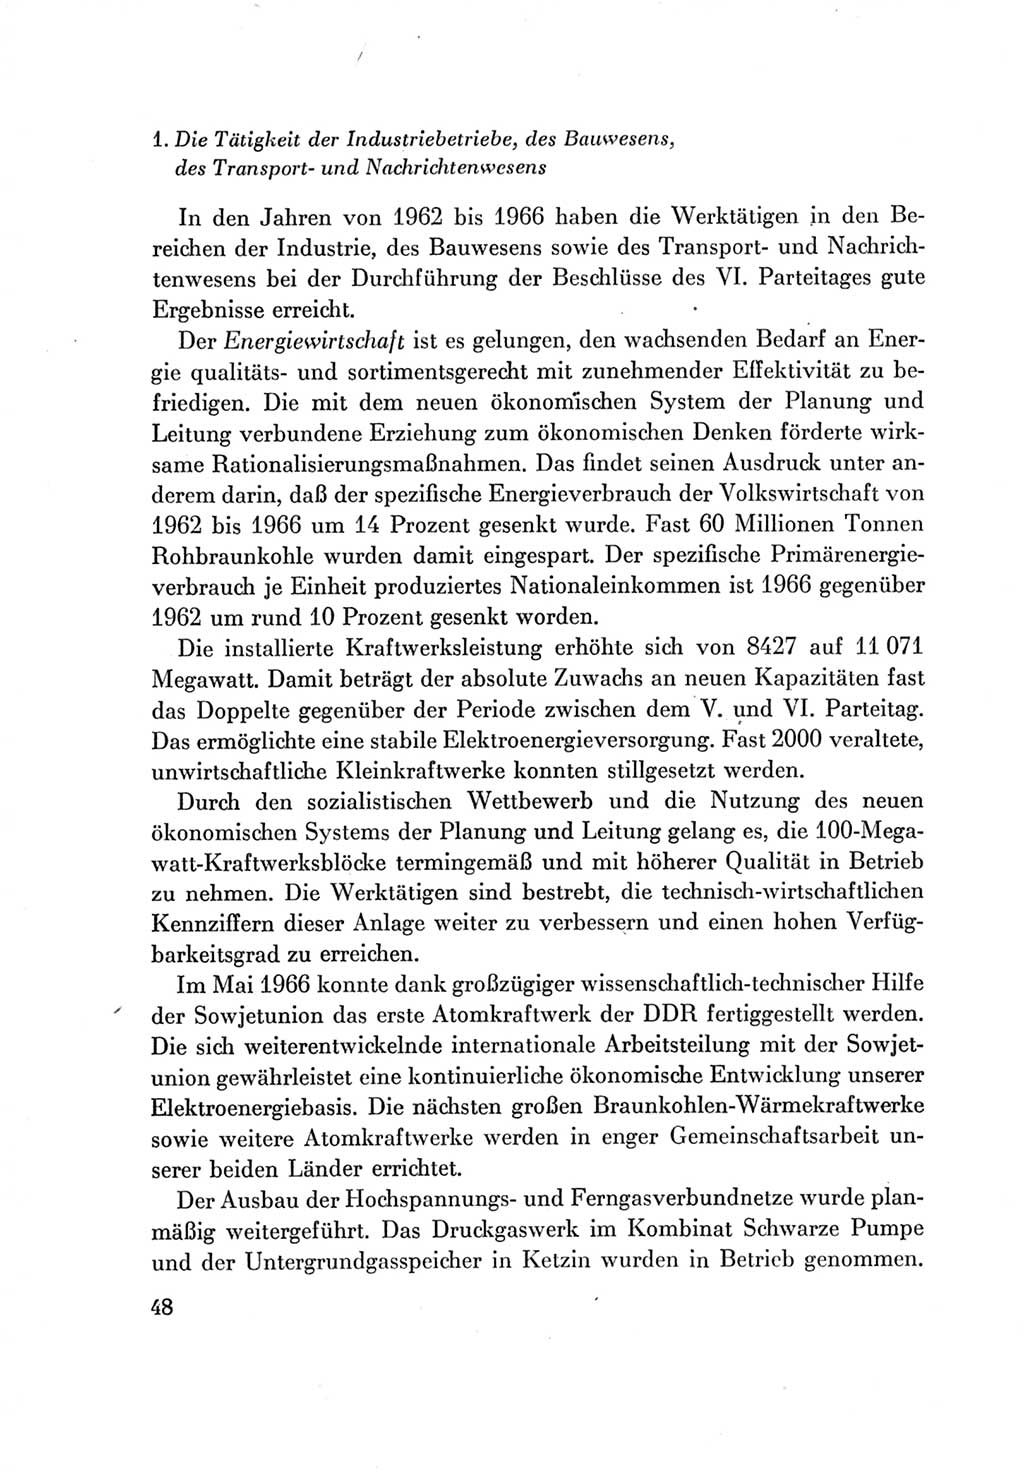 Protokoll der Verhandlungen des Ⅶ. Parteitages der Sozialistischen Einheitspartei Deutschlands (SED) [Deutsche Demokratische Republik (DDR)] 1967, Band Ⅳ, Seite 48 (Prot. Verh. Ⅶ. PT SED DDR 1967, Bd. Ⅳ, S. 48)